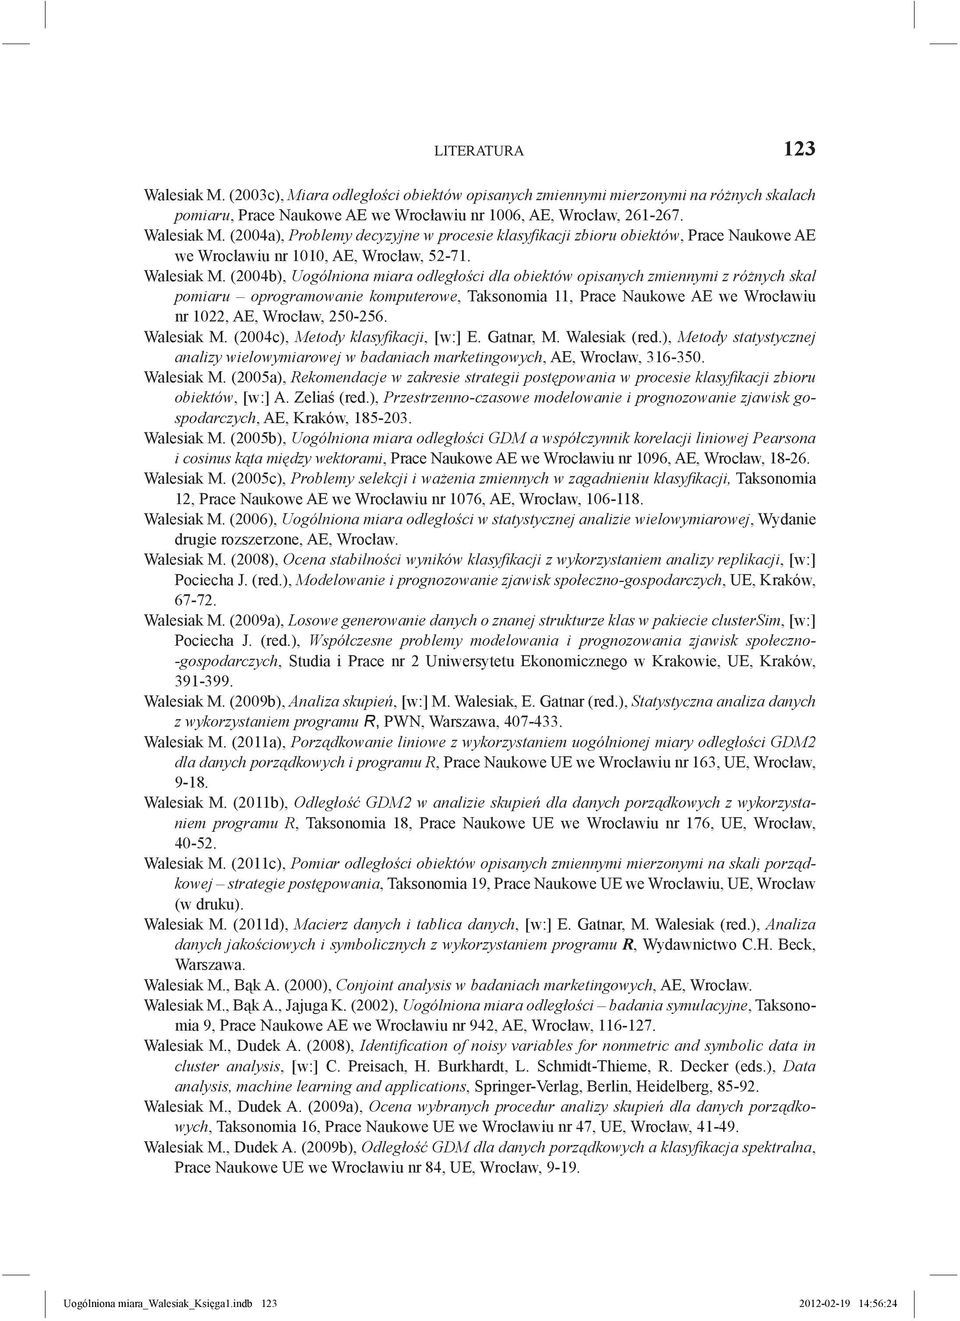 (2004b), Uogólniona miara odległości dla obiektów opisanych zmiennymi z różnych skal pomiaru oprogramowanie komputerowe, Taksonomia 11, Prace Naukowe AE we Wrocławiu nr 1022, AE, Wrocław, 250-256.